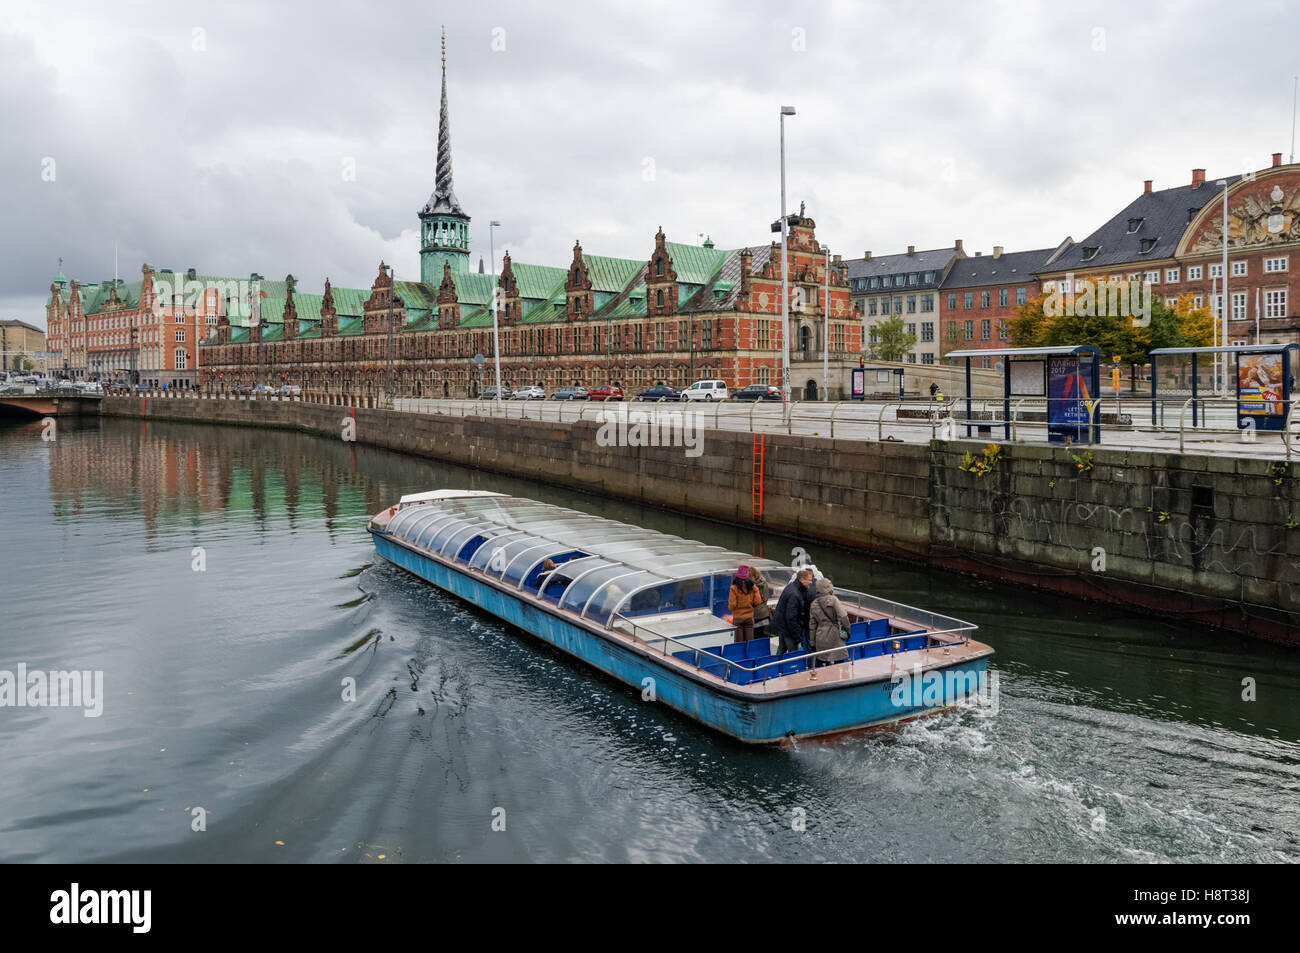 Tourist boat on Frederiksholm Canal with Copenhagen Old Stock Exchange, Borsen, Copenhagen, Denmark Stock Photo